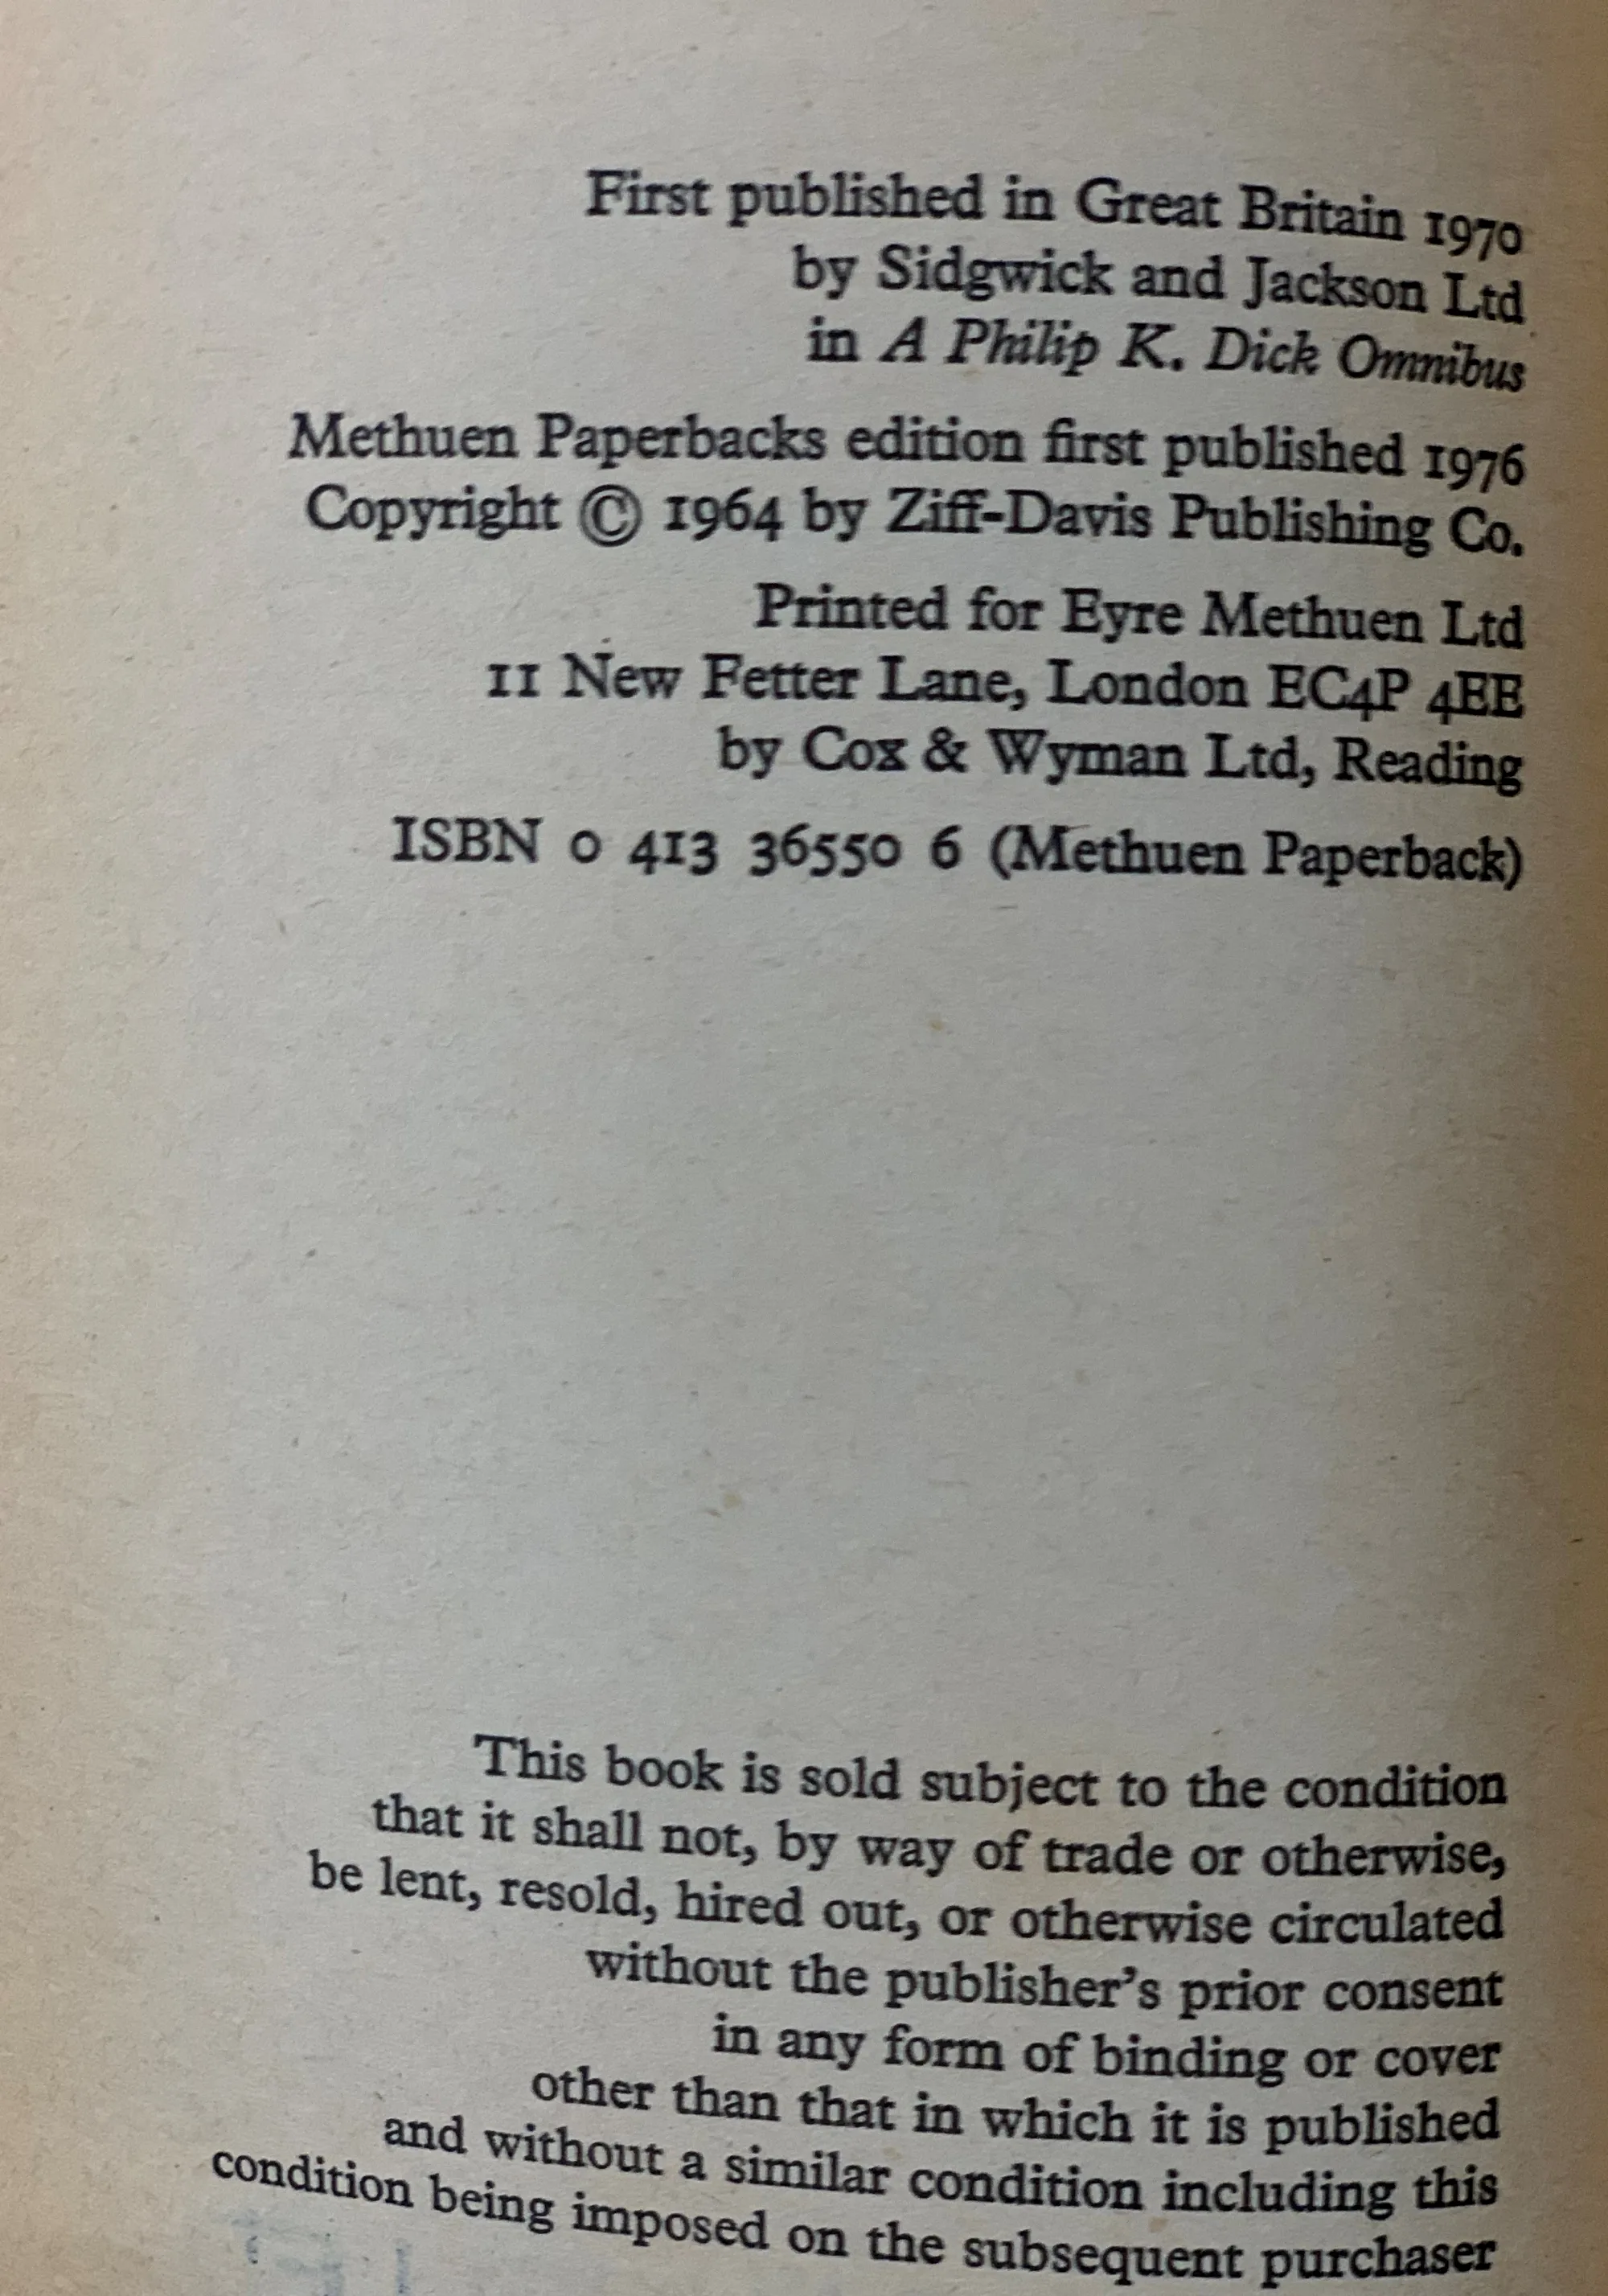 版权页显示这本书的出版历史